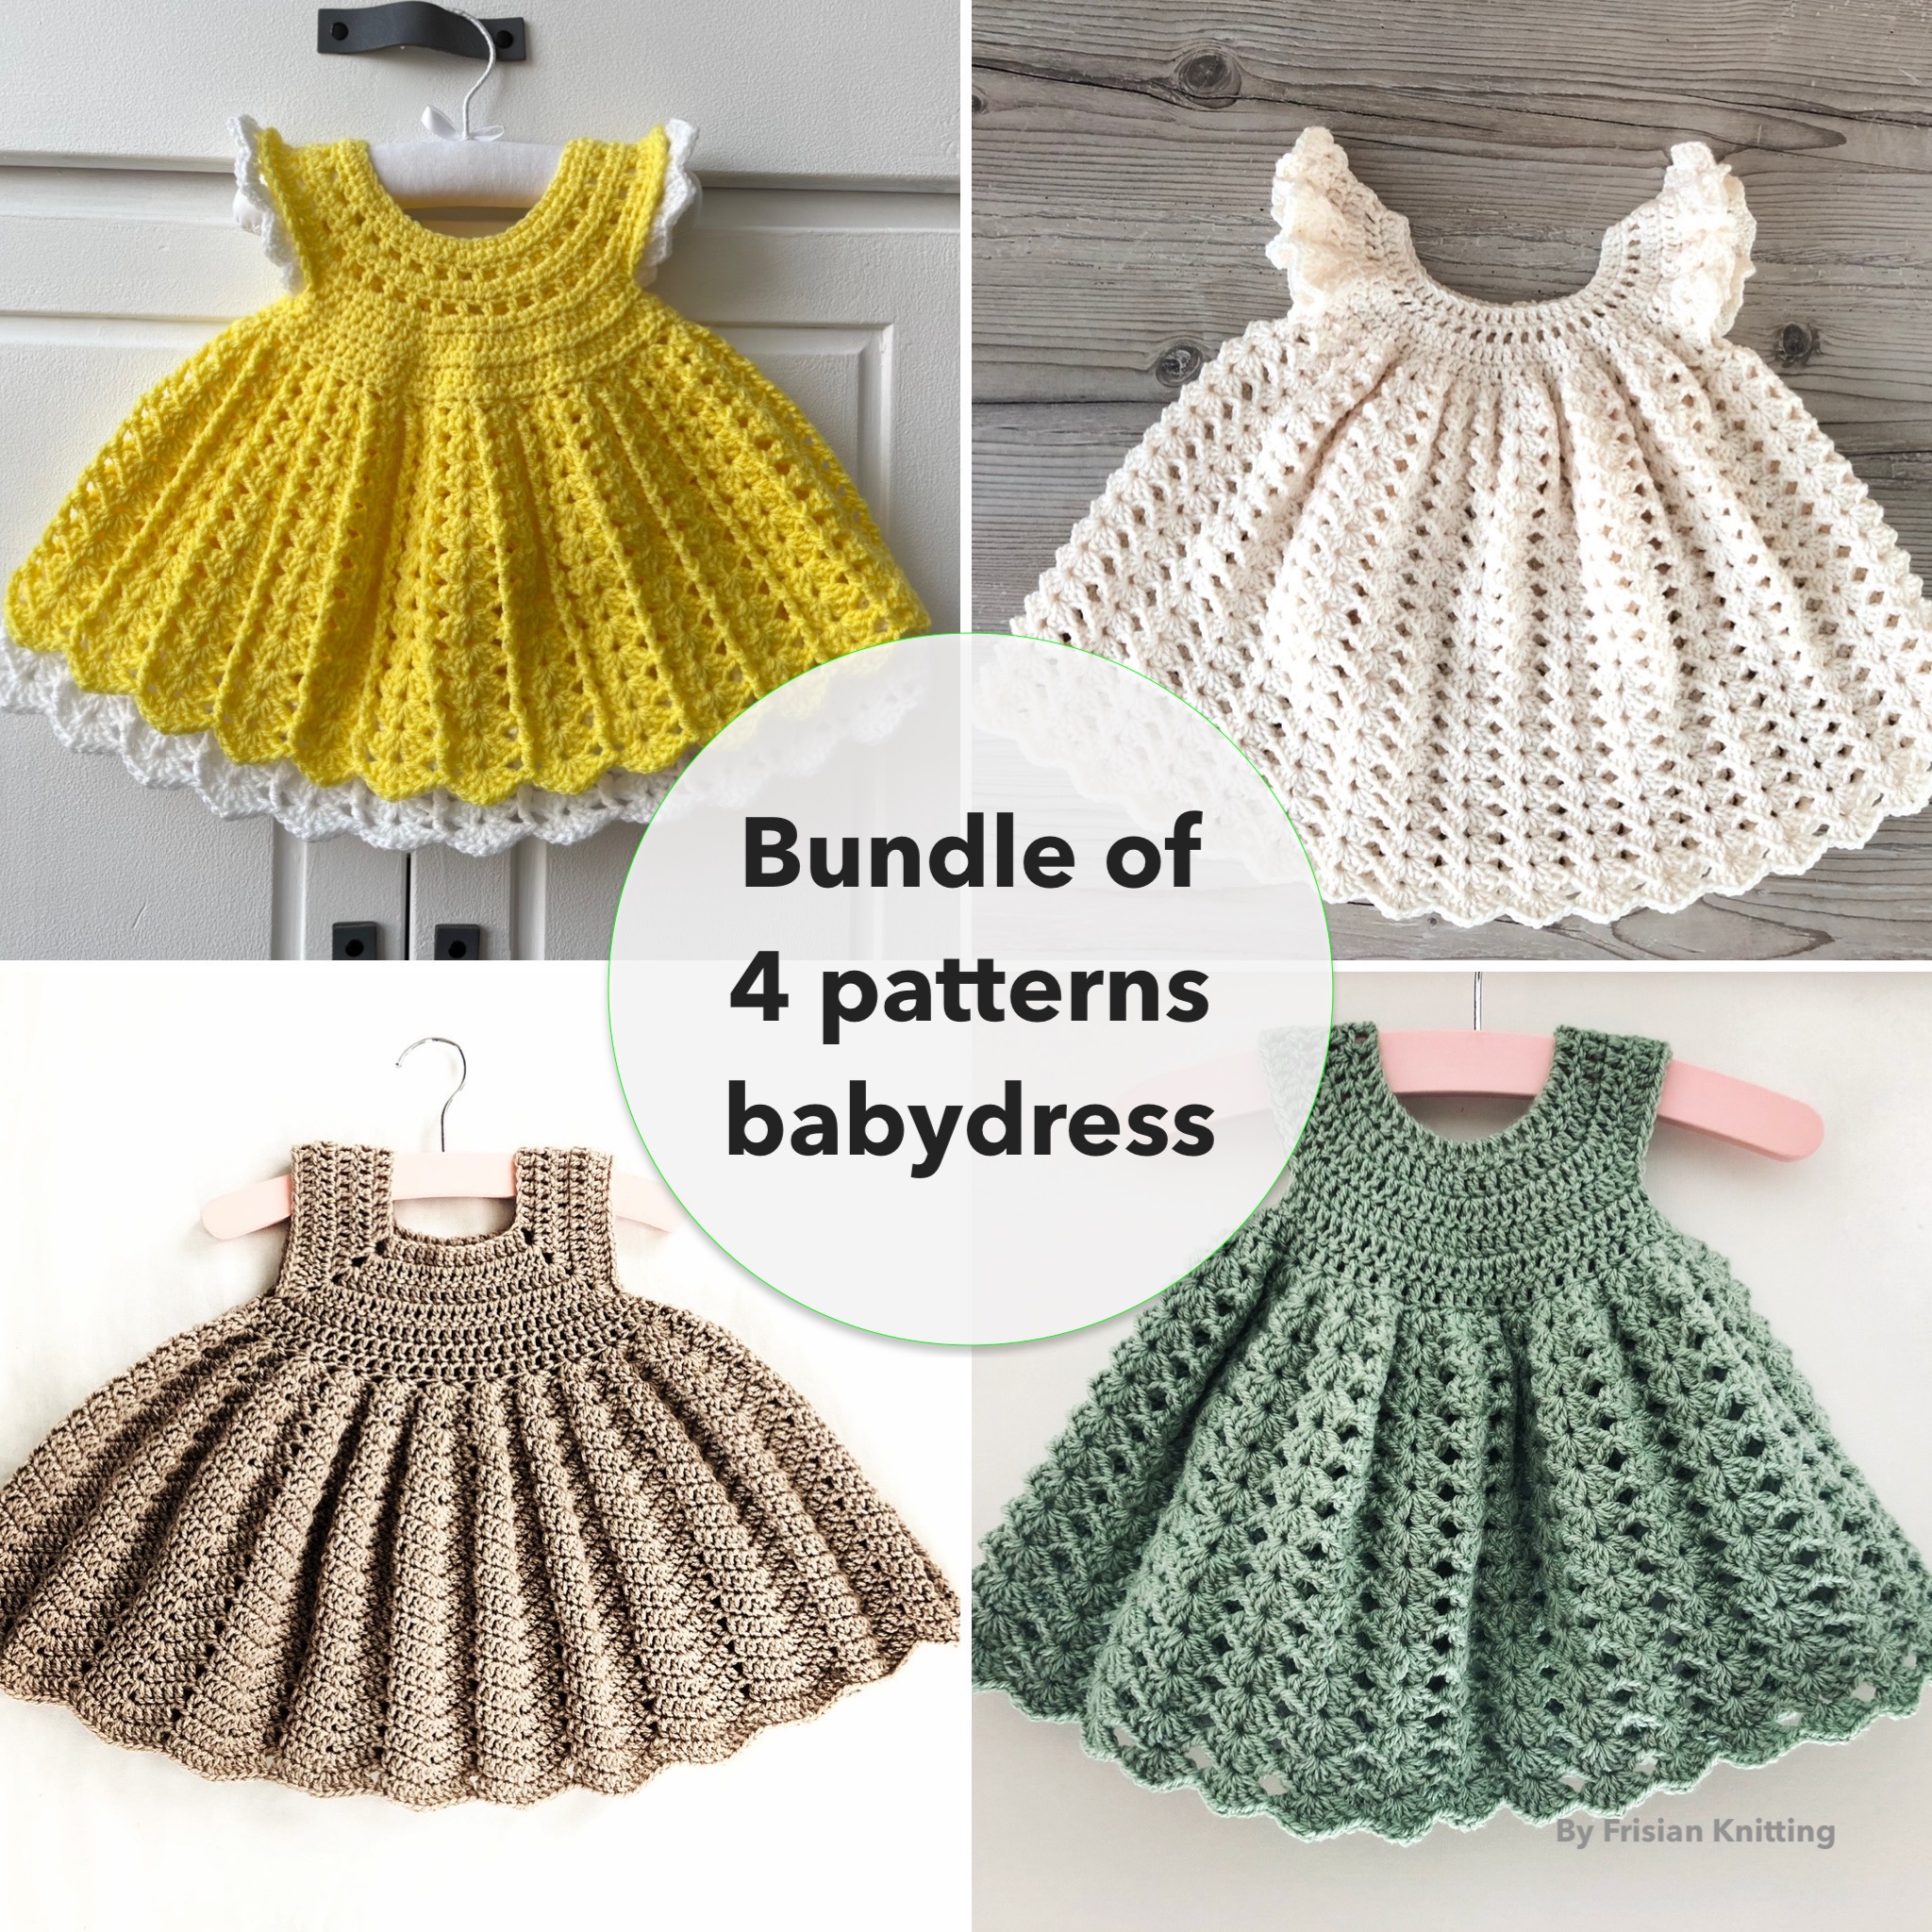 Baby-dresses